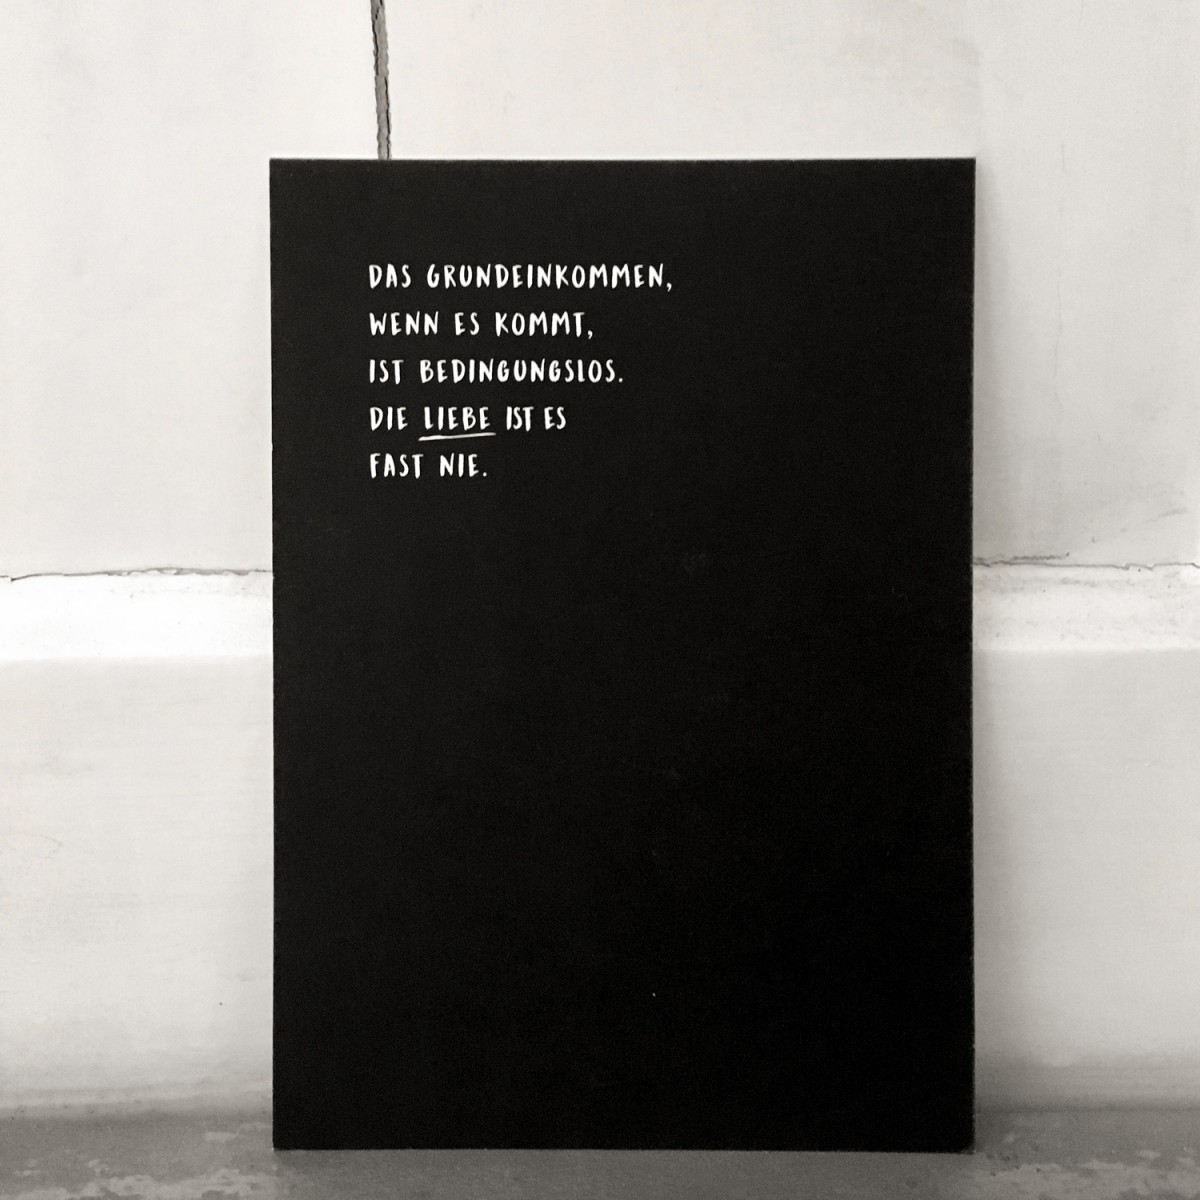 Love is the new black – Postkarten-Set "Alles kann, Liebe muss"